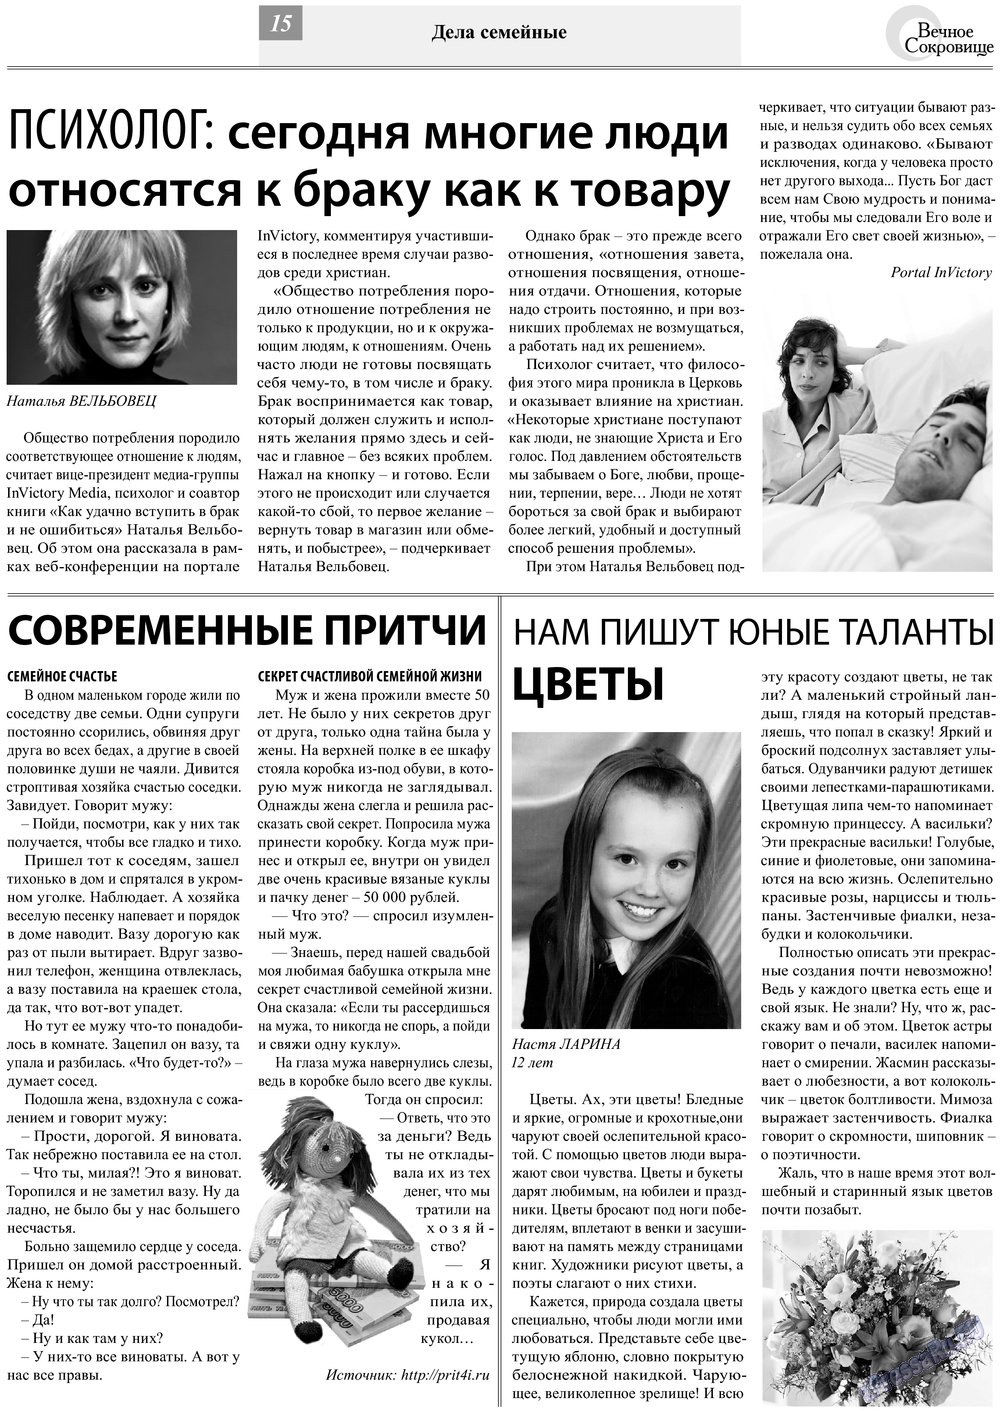 Вечное сокровище (газета). 2013 год, номер 2, стр. 15